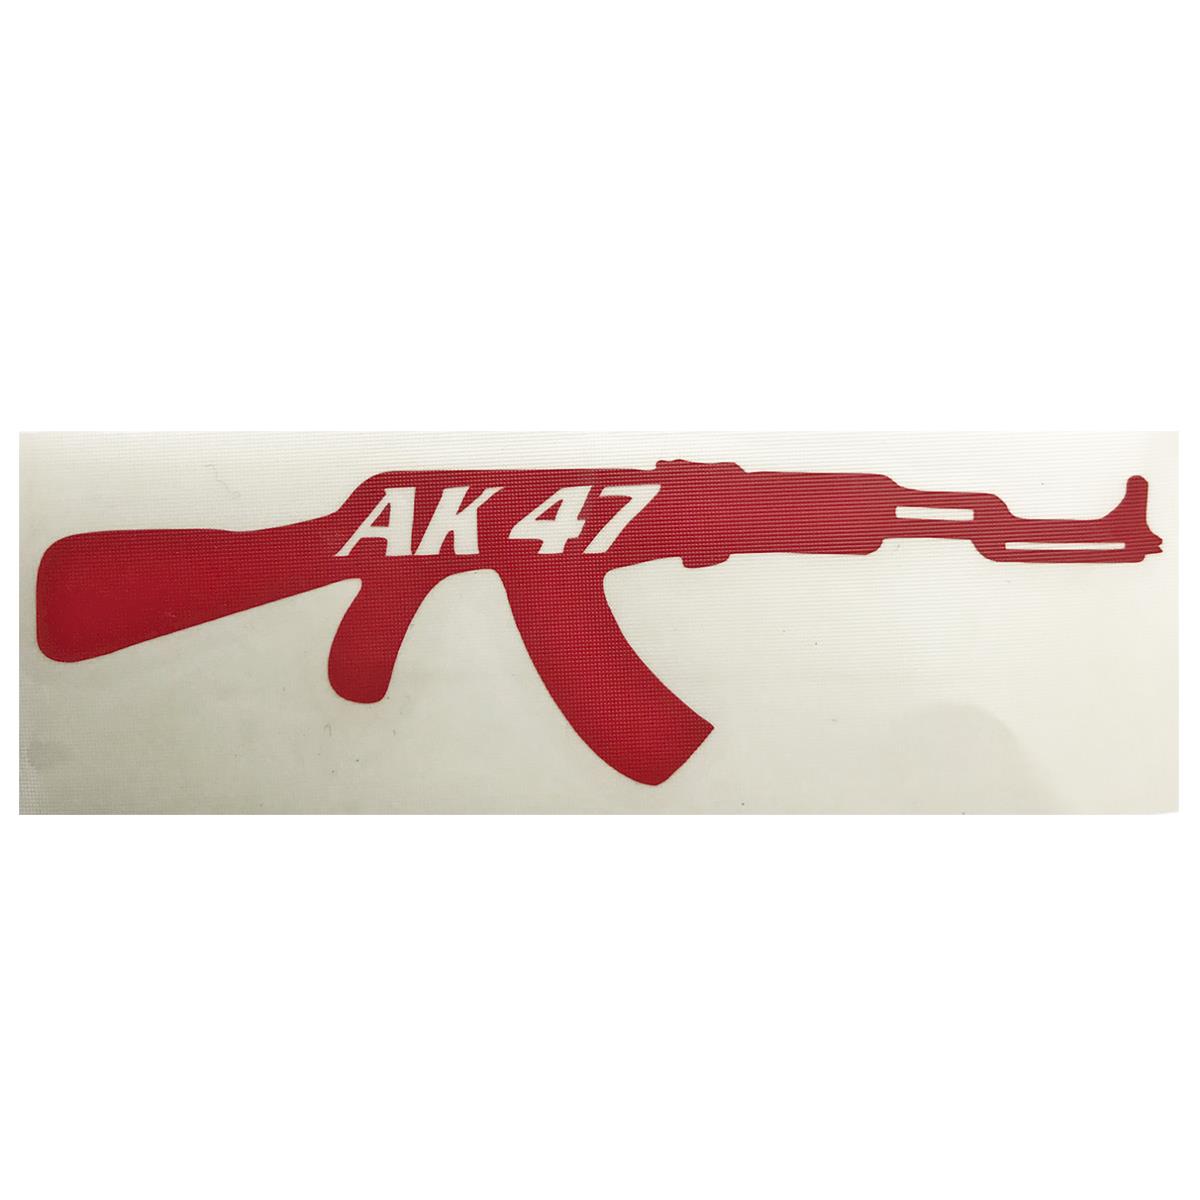 Αυτοκόλλητο όπλο Ak-47 ανάγλυφο κόκκινο - MotoHouse Tamias